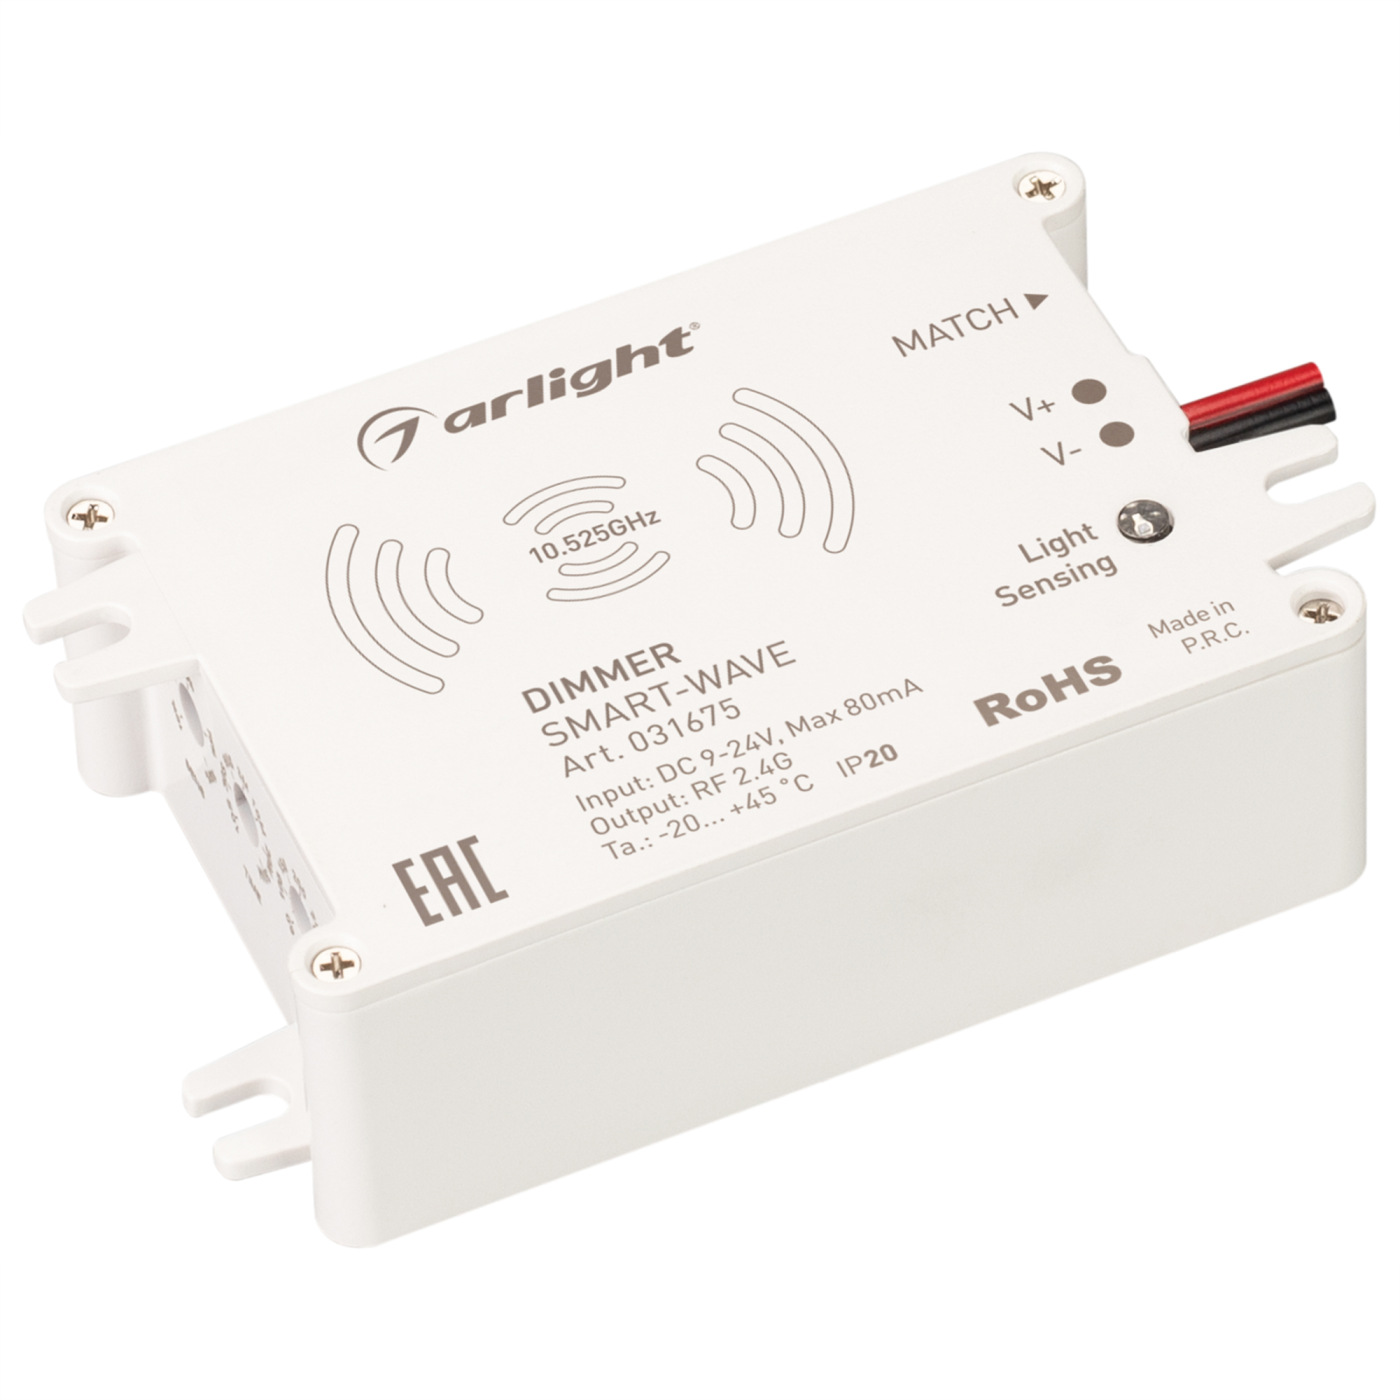 Диммер SMART-WAVE (9-24V, 2.4G) (Arlight, IP20 Пластик, 5 лет) usb smart charger с адаптером питания на 20 портов универсальной зарядной станции для семейного и офисного использования